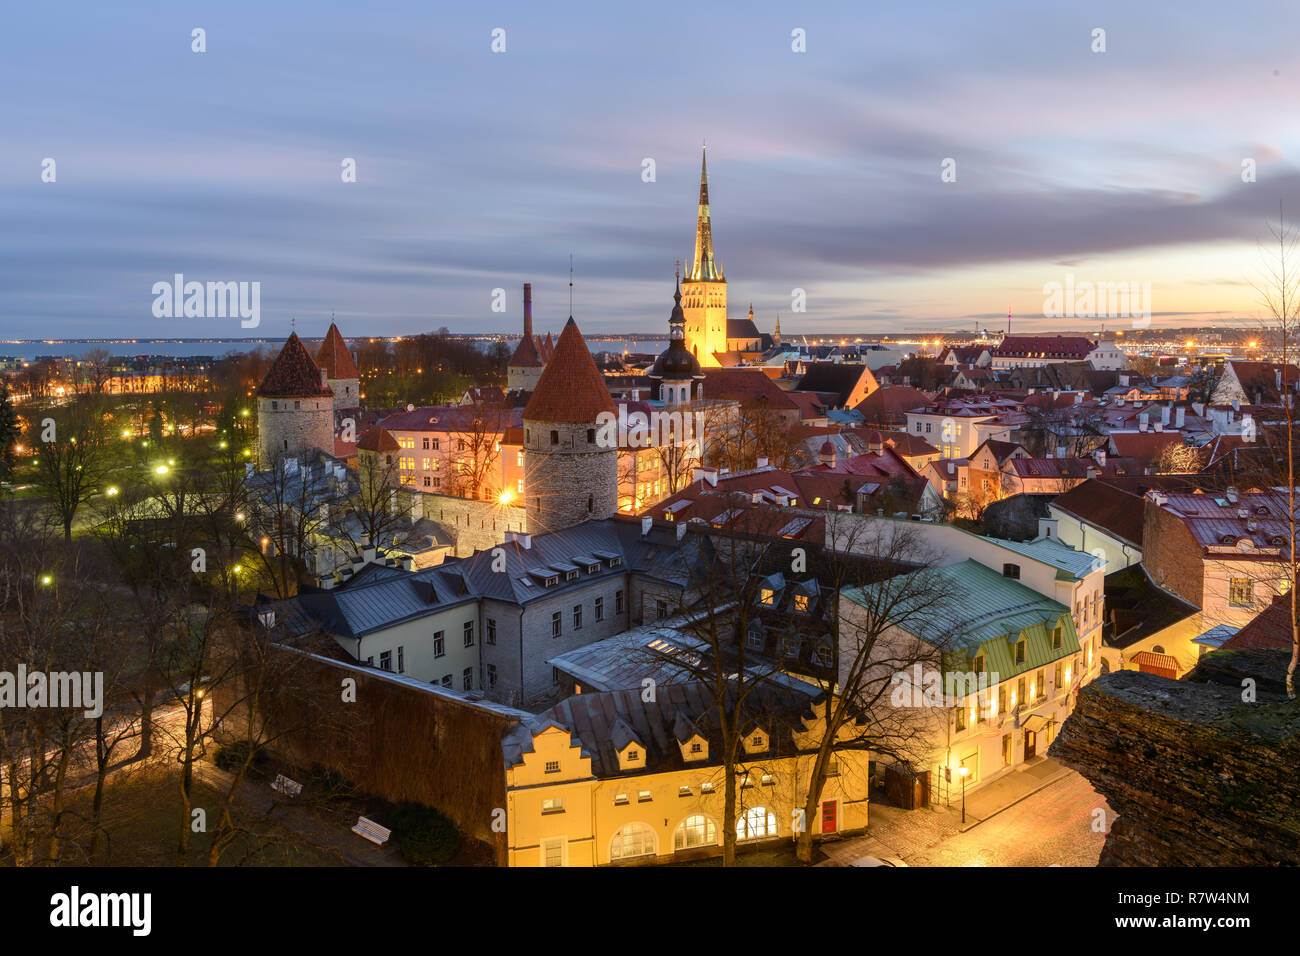 Tallinn old town at sunrise Stock Photo